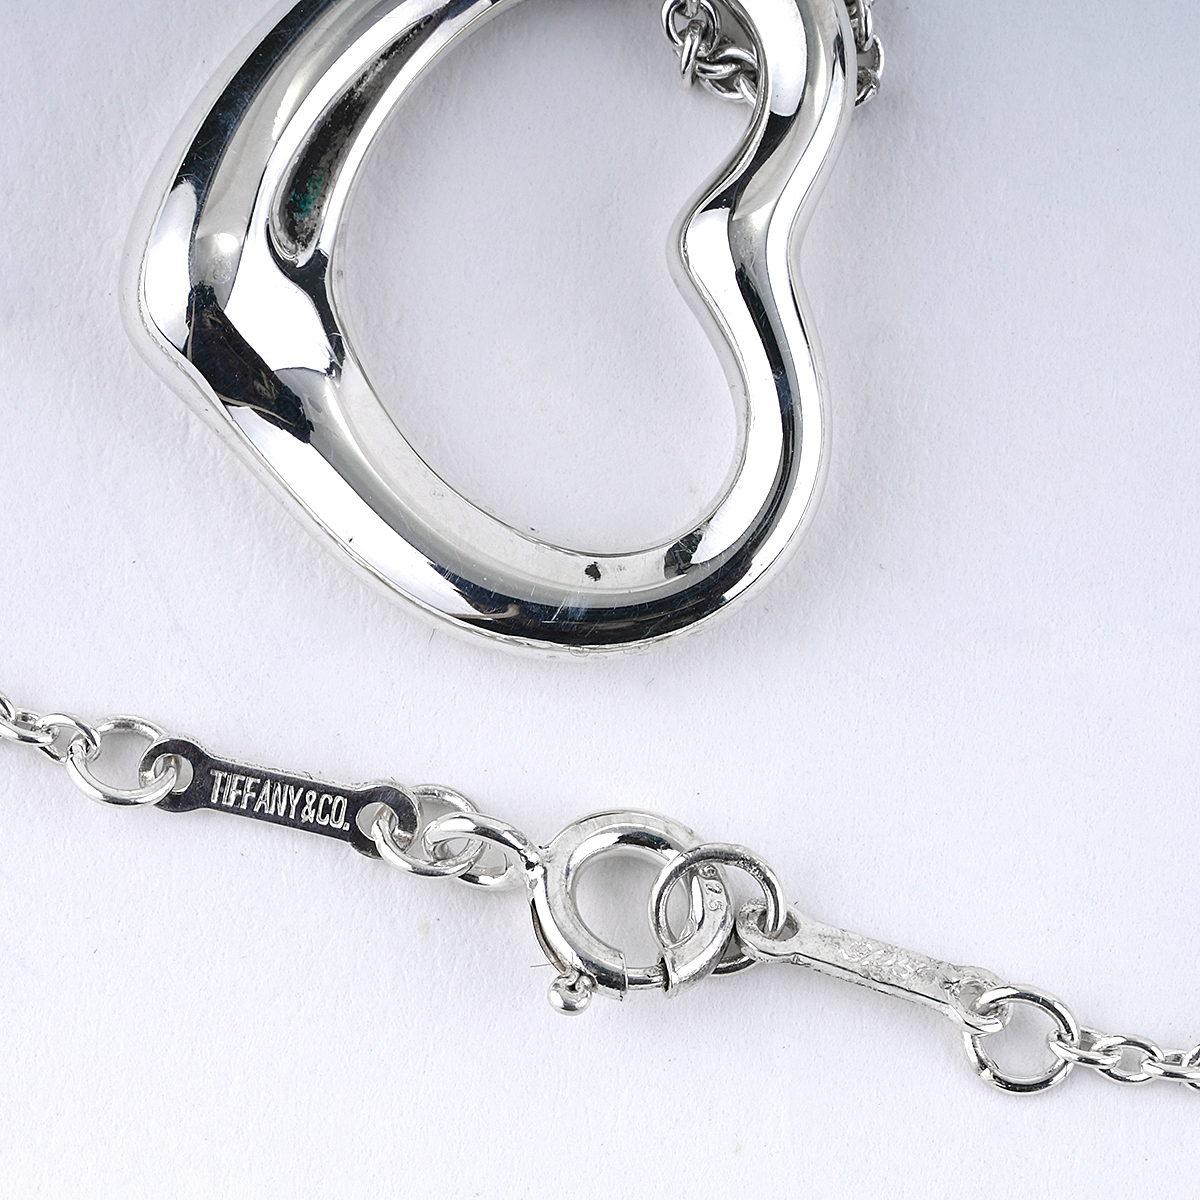 Tiffany & Co. Elsa Peretti Open Heart Necklace in Silver Small